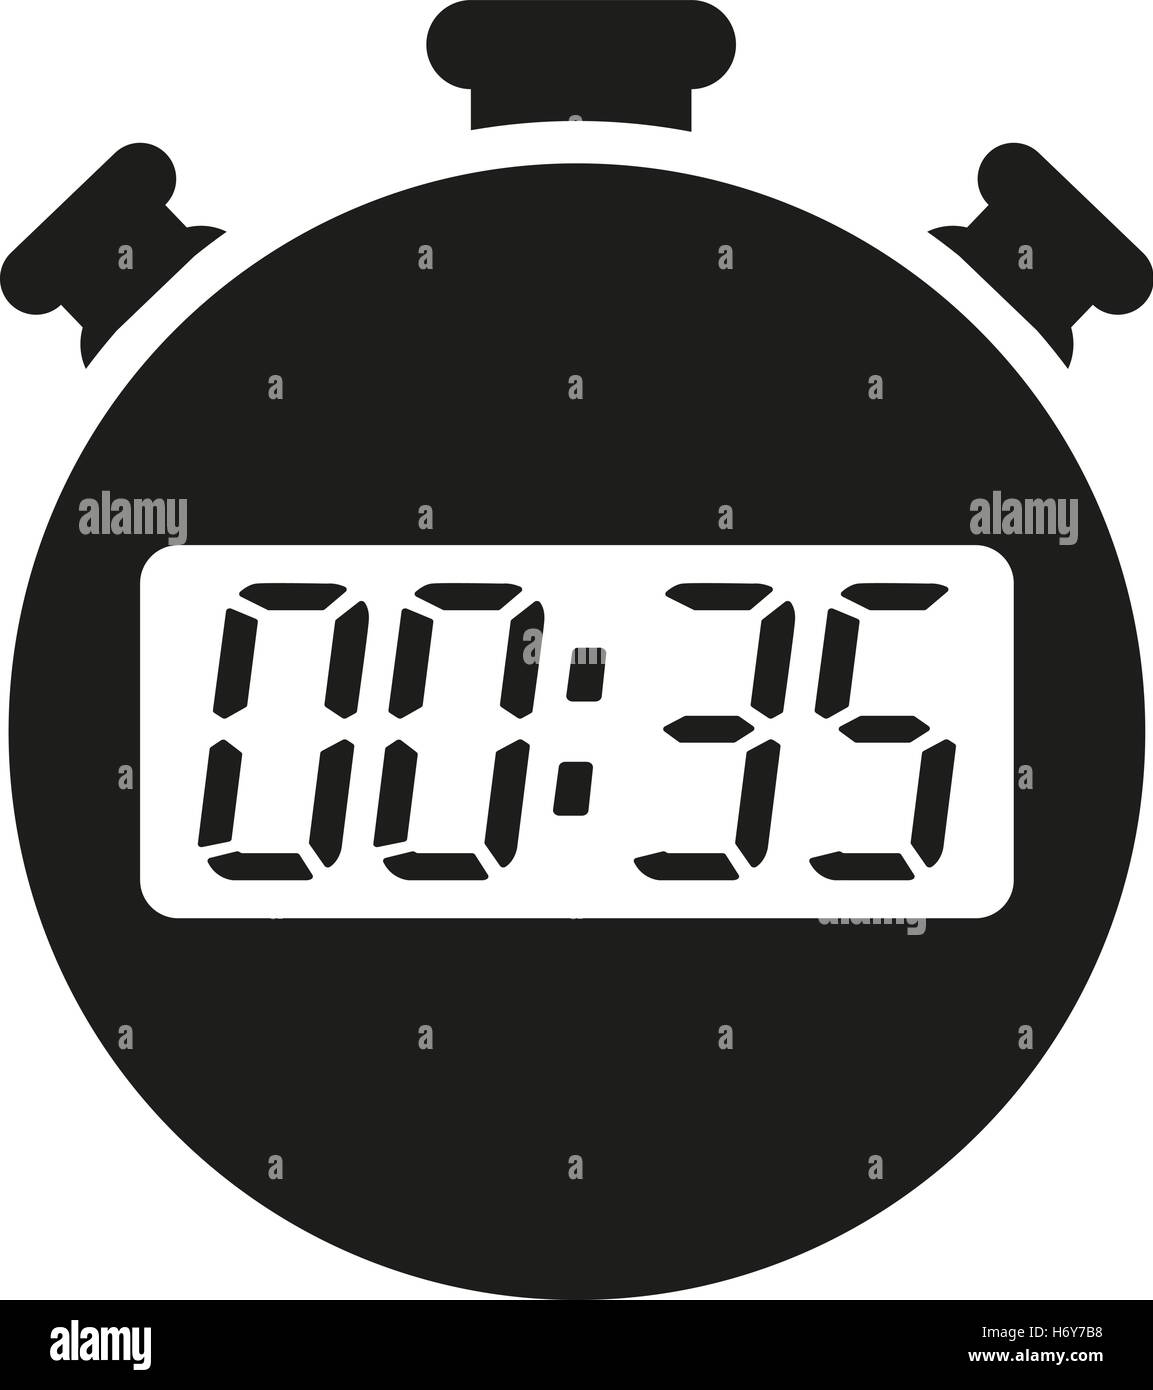 Dieci minuti sull'icona dell'orologio analogico con design piatto e disegno  vettoriale Immagine e Vettoriale - Alamy